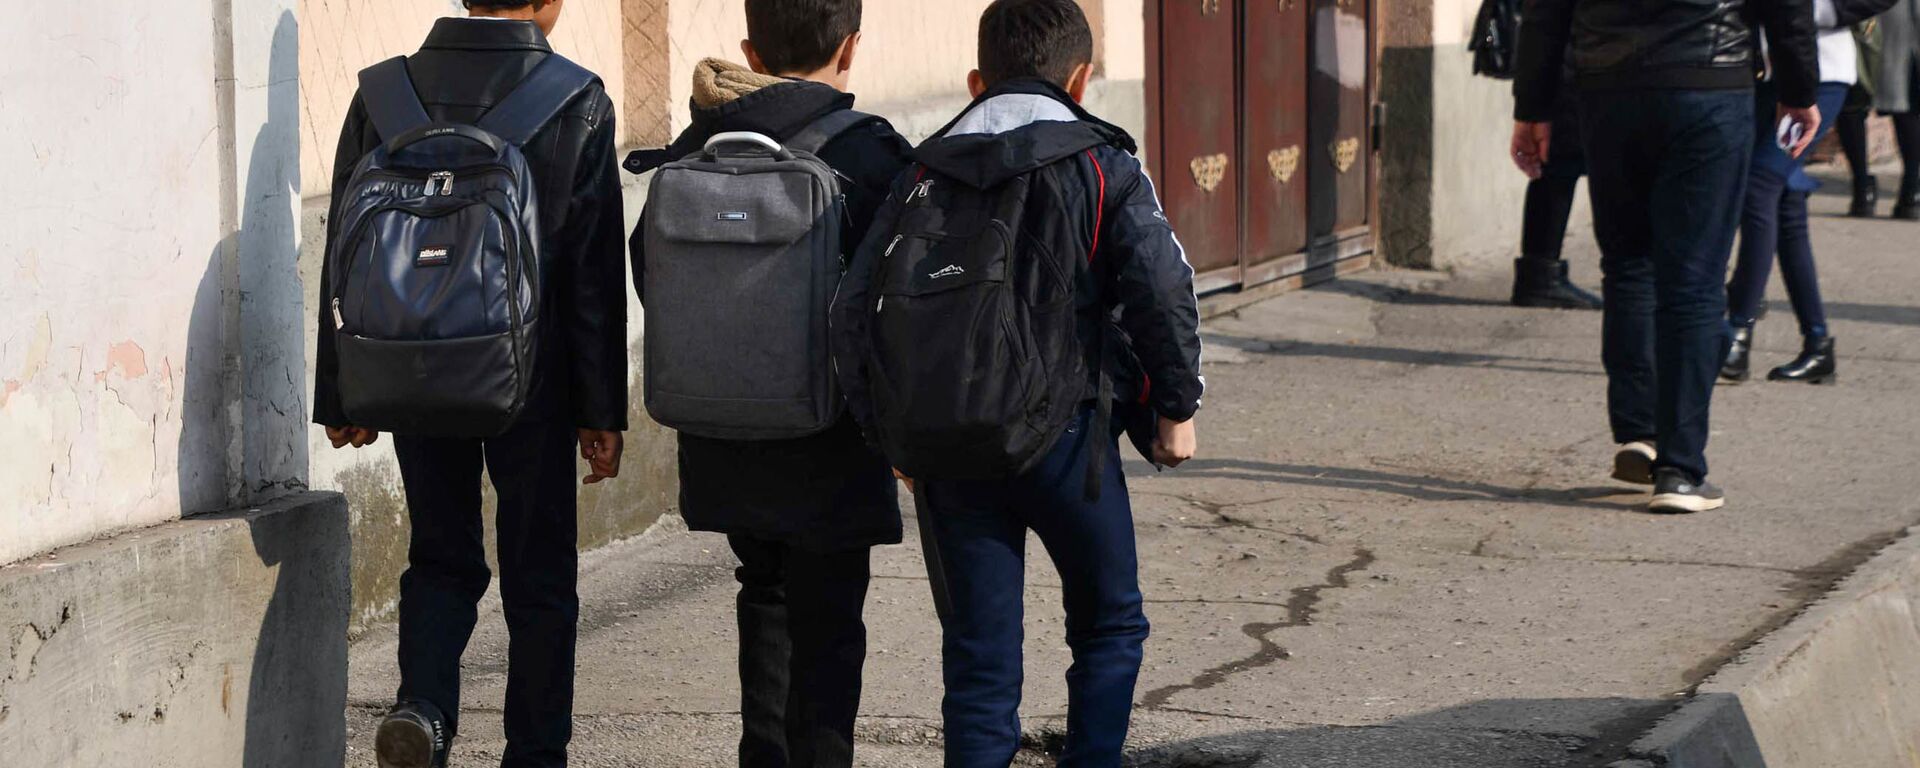 Школьники идут по улице города Душанбе - Sputnik Таджикистан, 1920, 21.05.2021